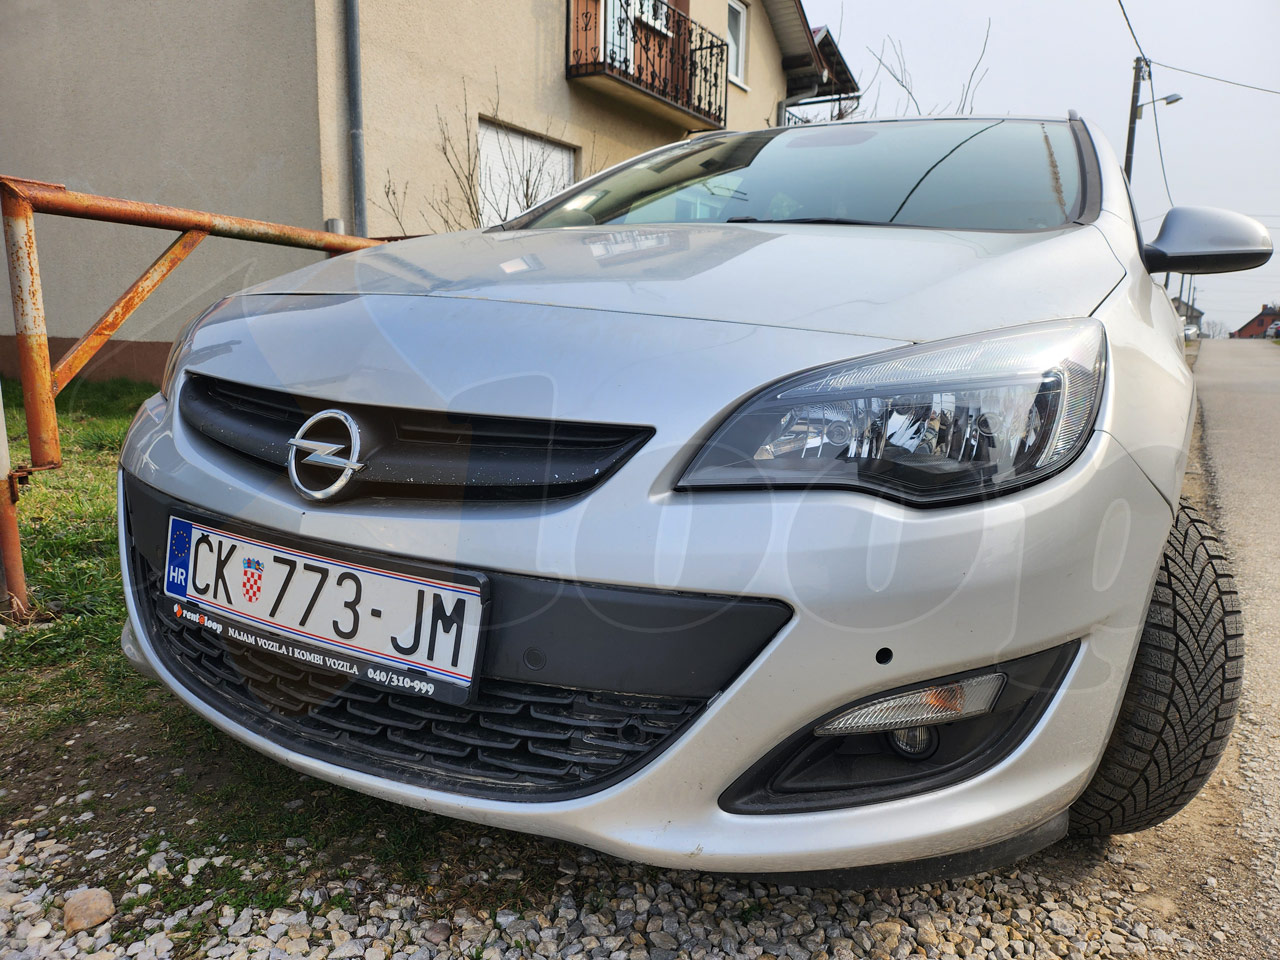 Opel Astra 1.6 CDTI ČK 773 JM